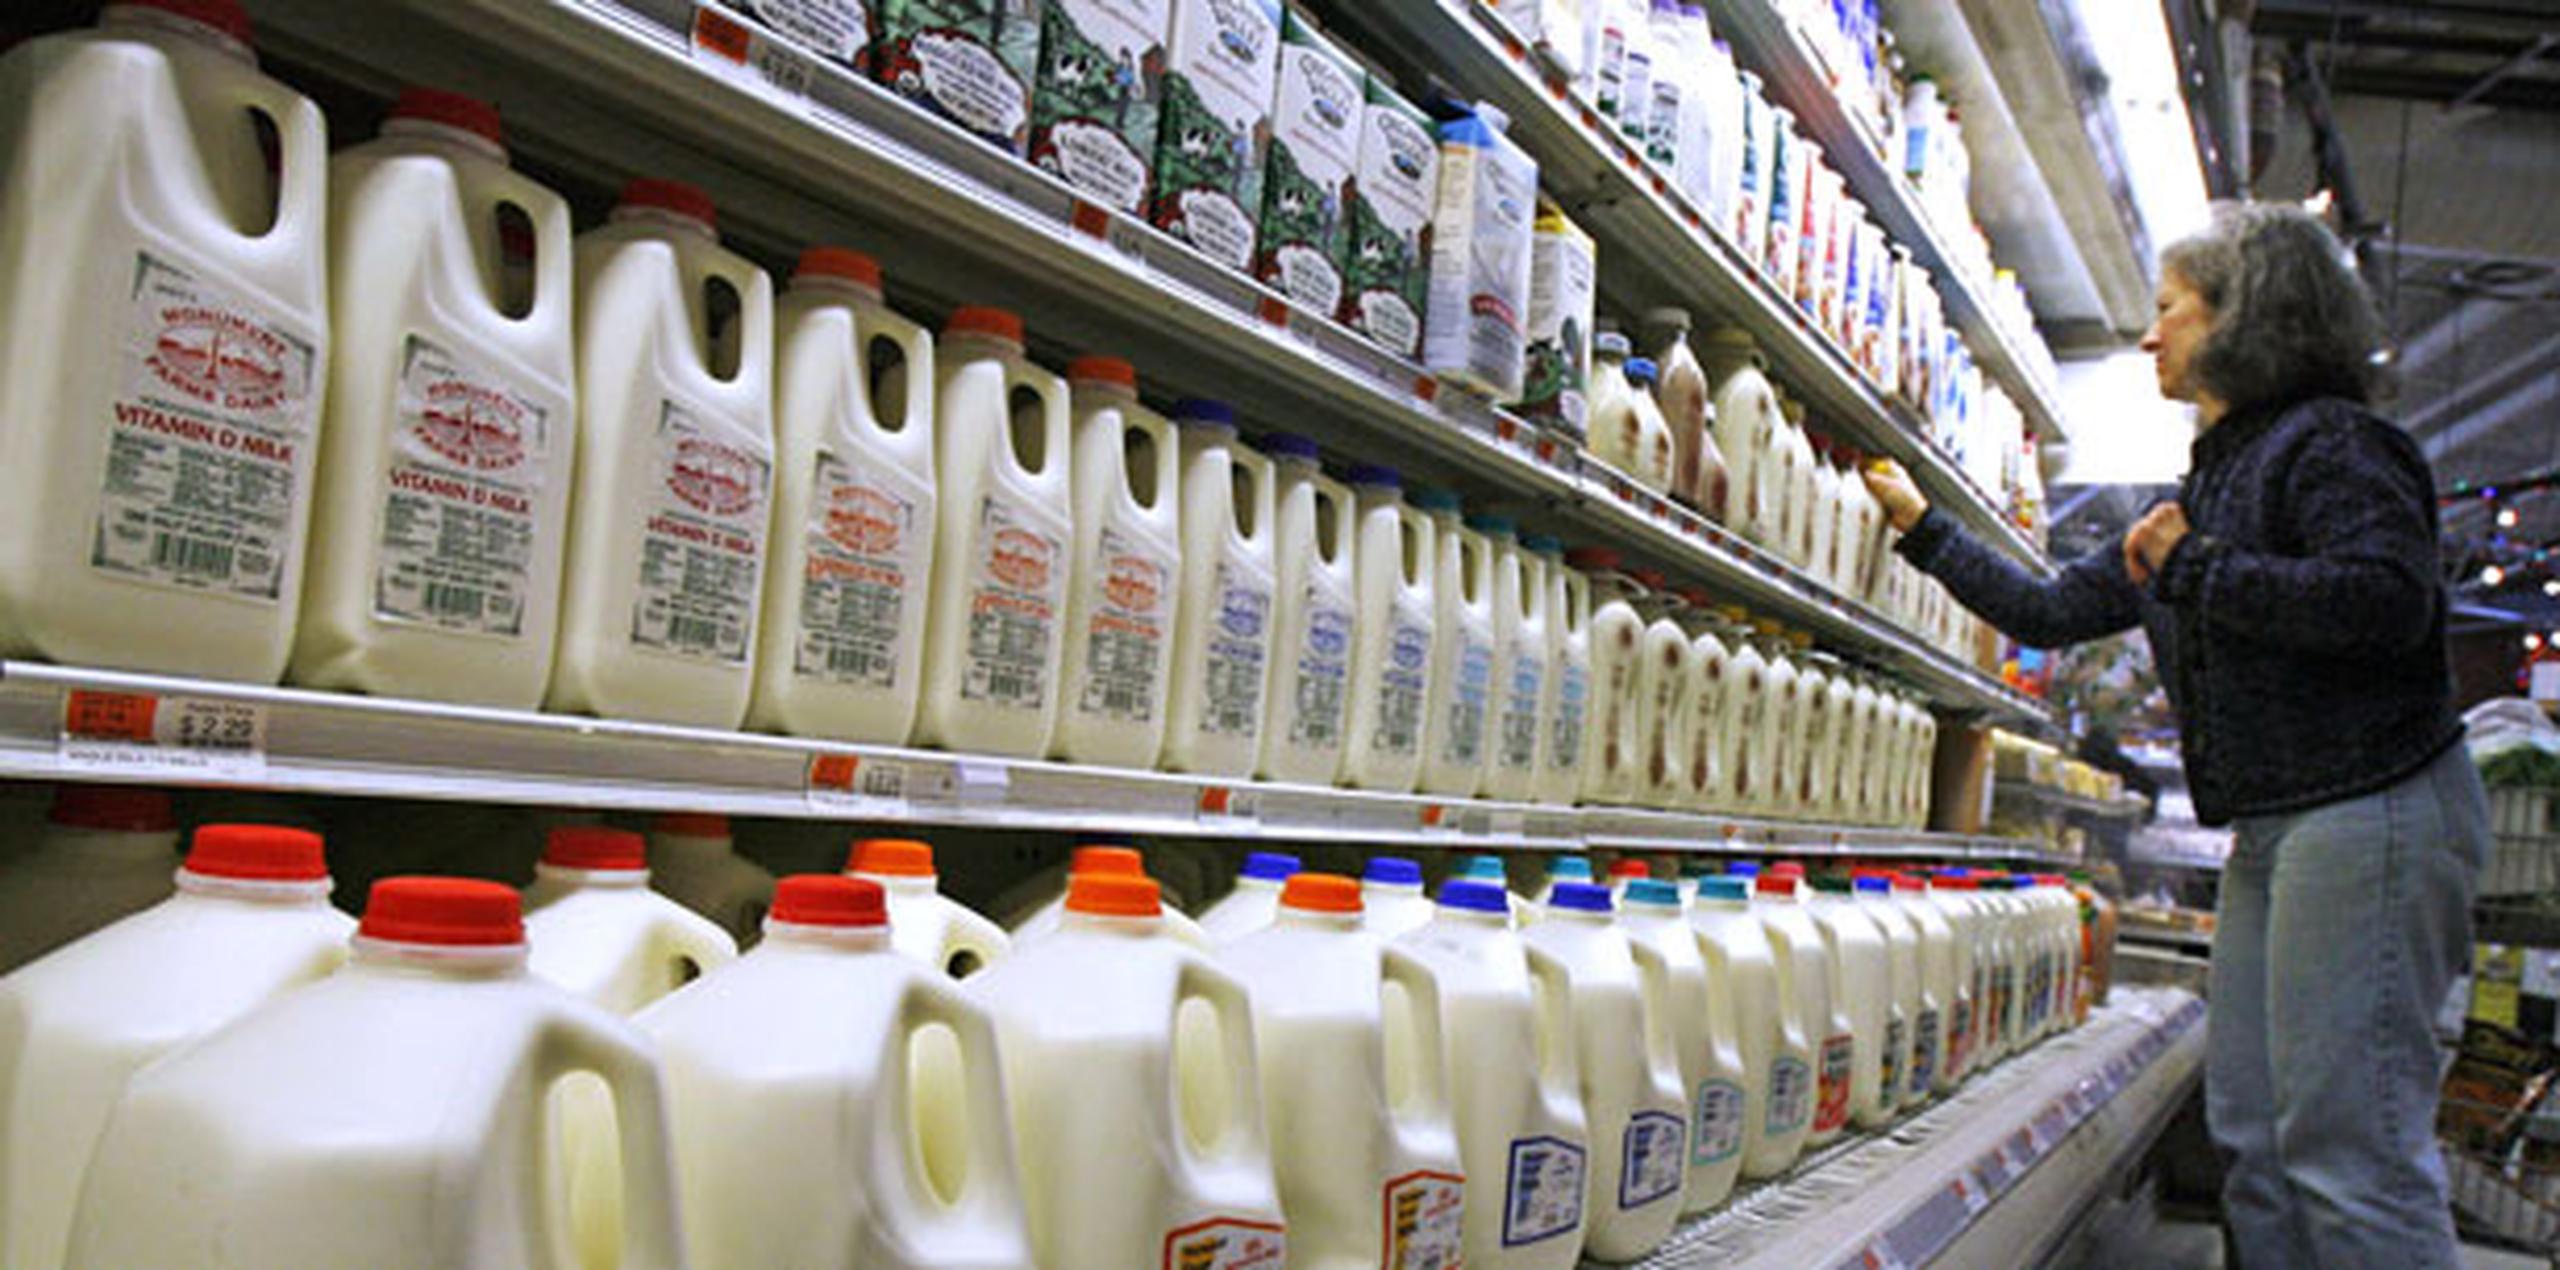 El Good Food Institute, una agrupación que defiende el uso de productos hechos a base de plantas, sostiene sin embargo que se debe permitir la palabra “leche” para productos no lácteos siempre y cuando haya un término aclaratorio.  (AP)